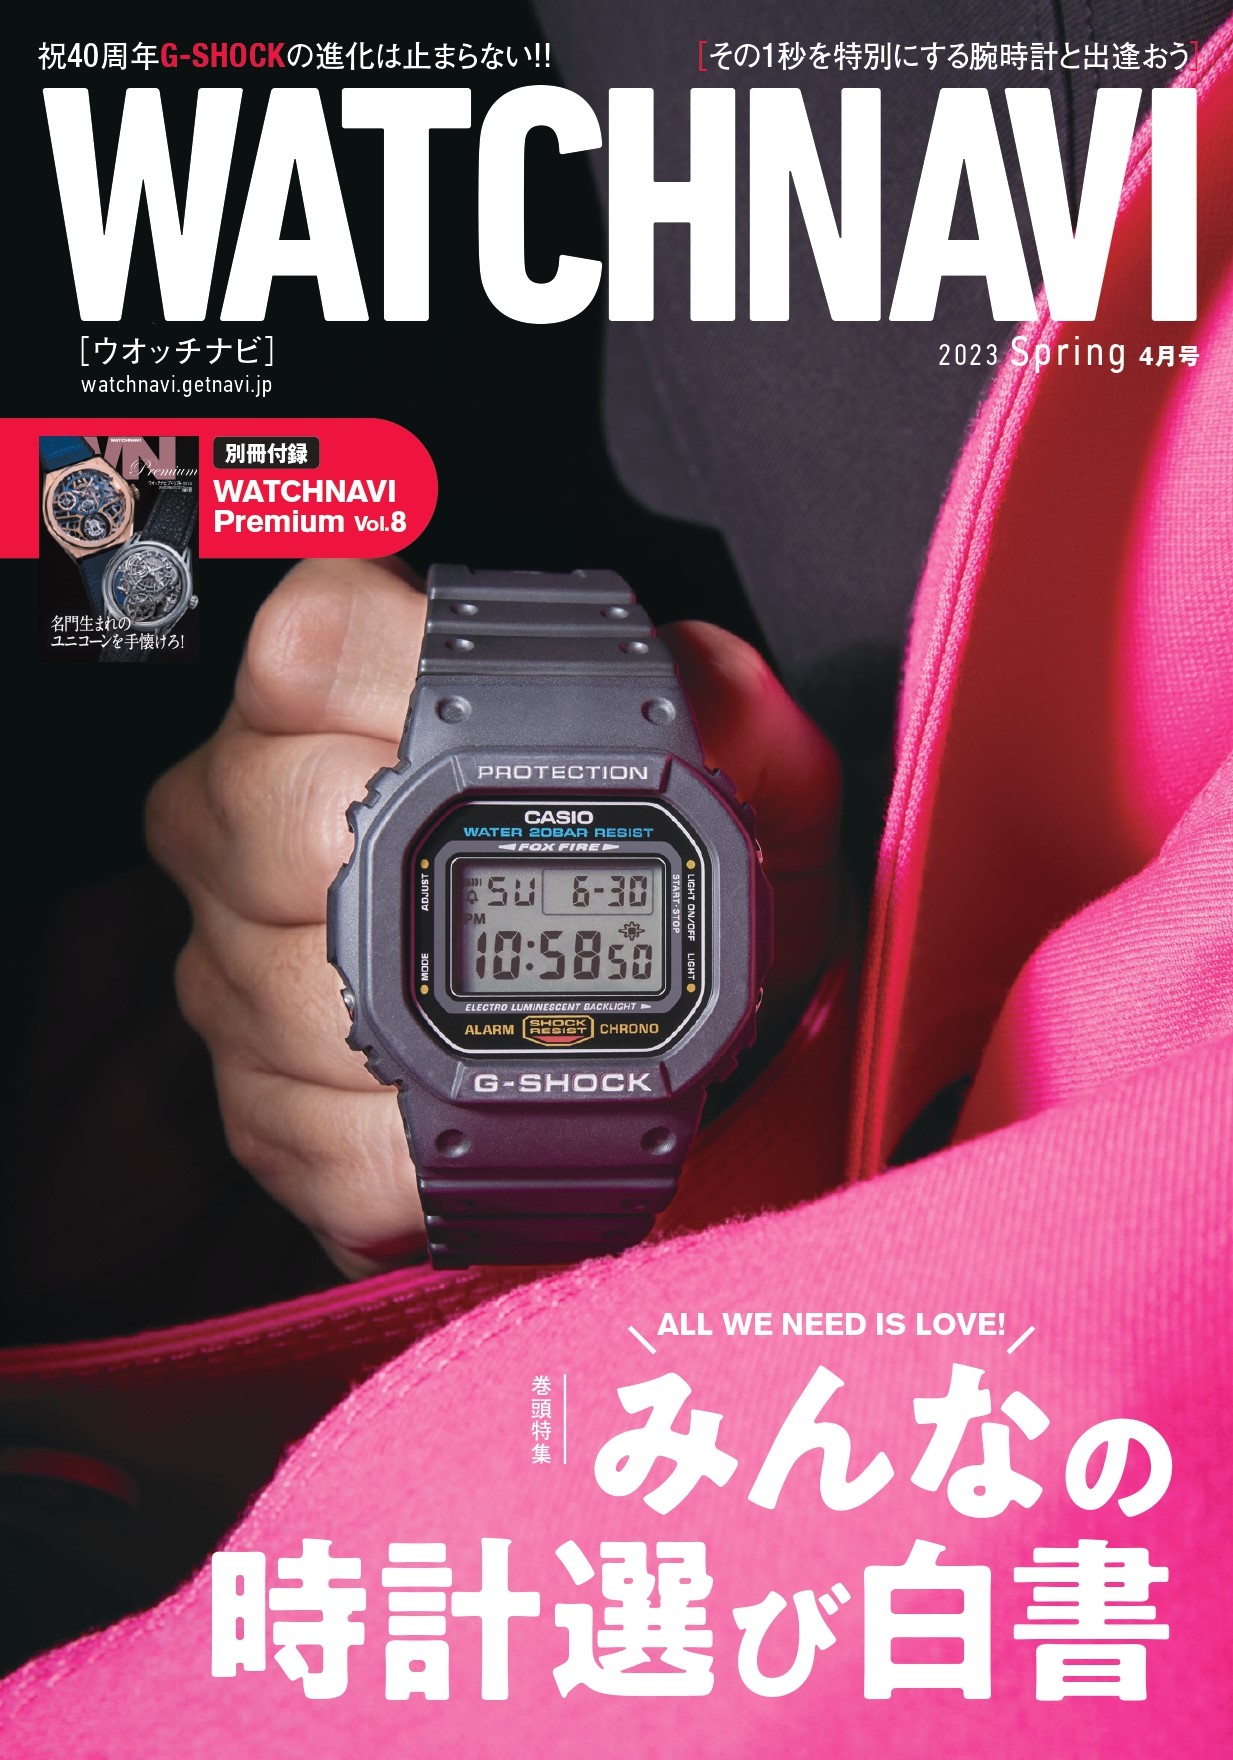 WATCHNAVI 2023 Spring 4月号 (Vol.89) - ワン・パブリッシング